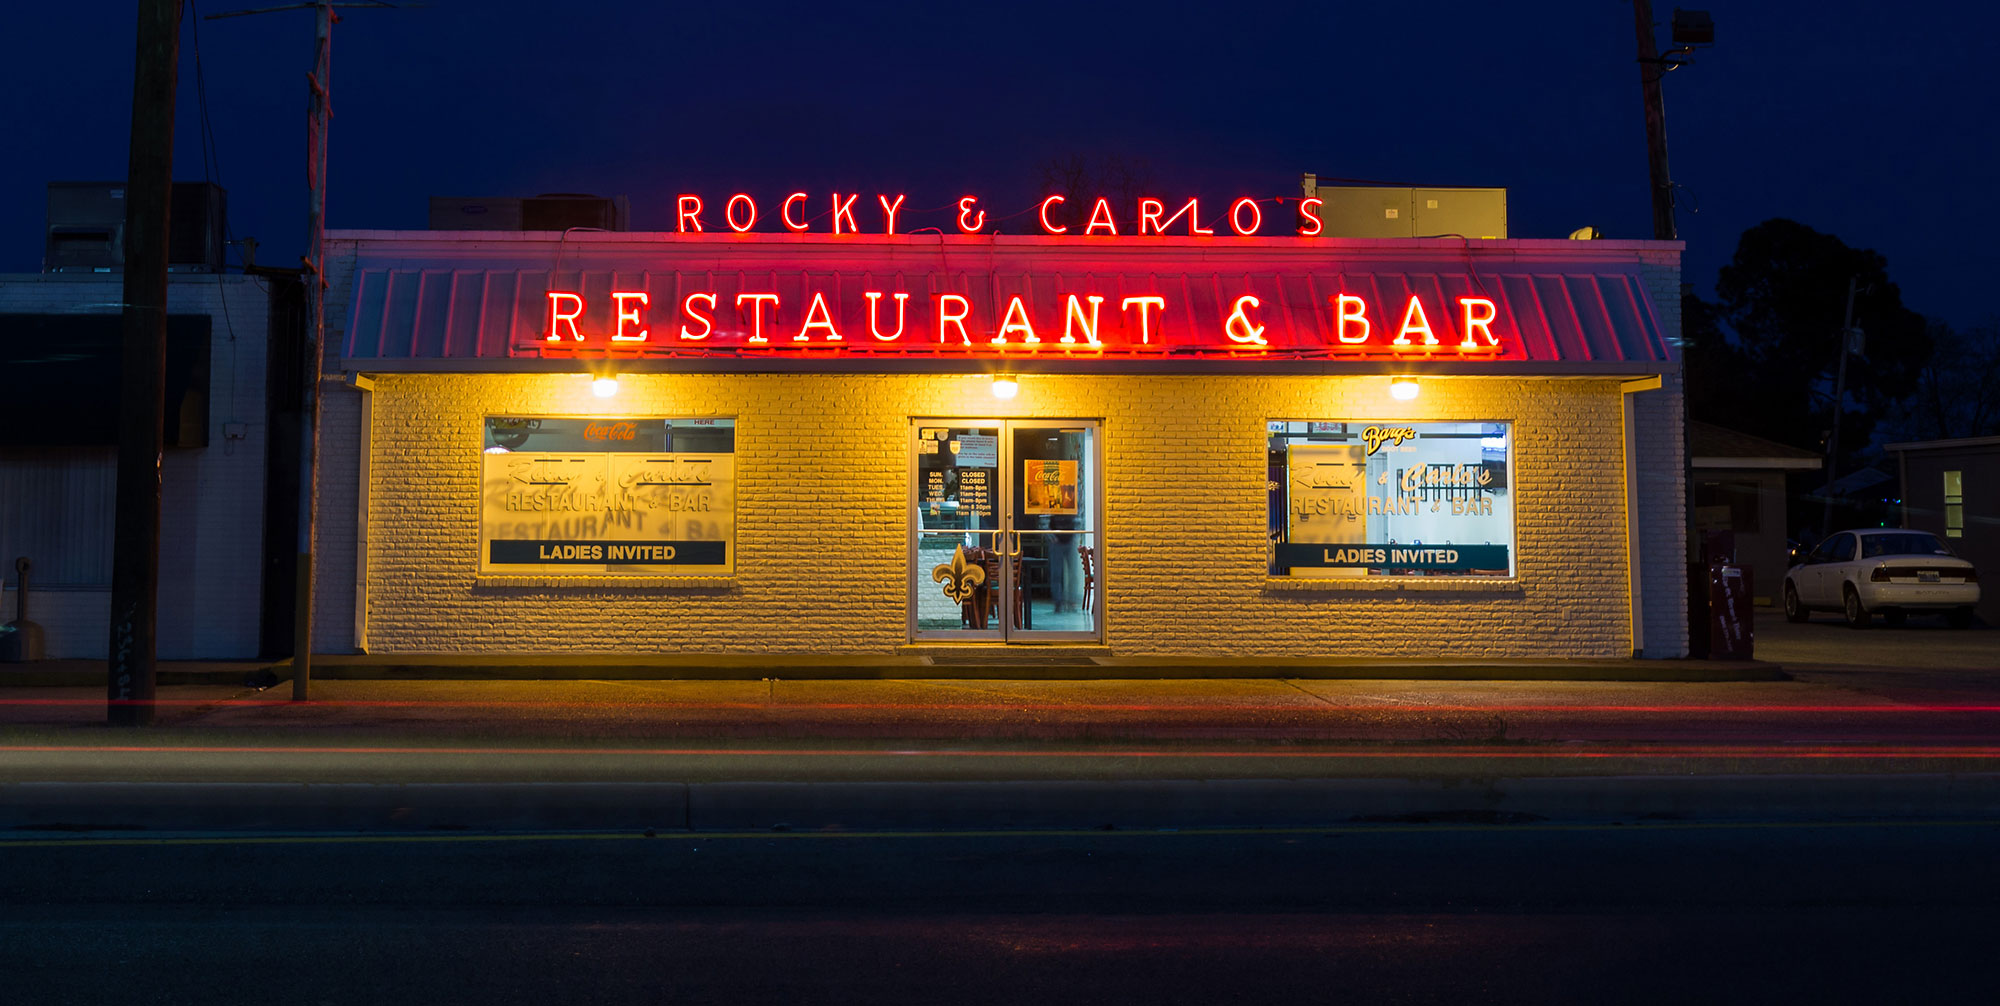 Rocky & Carlo's Restaurant & Bar